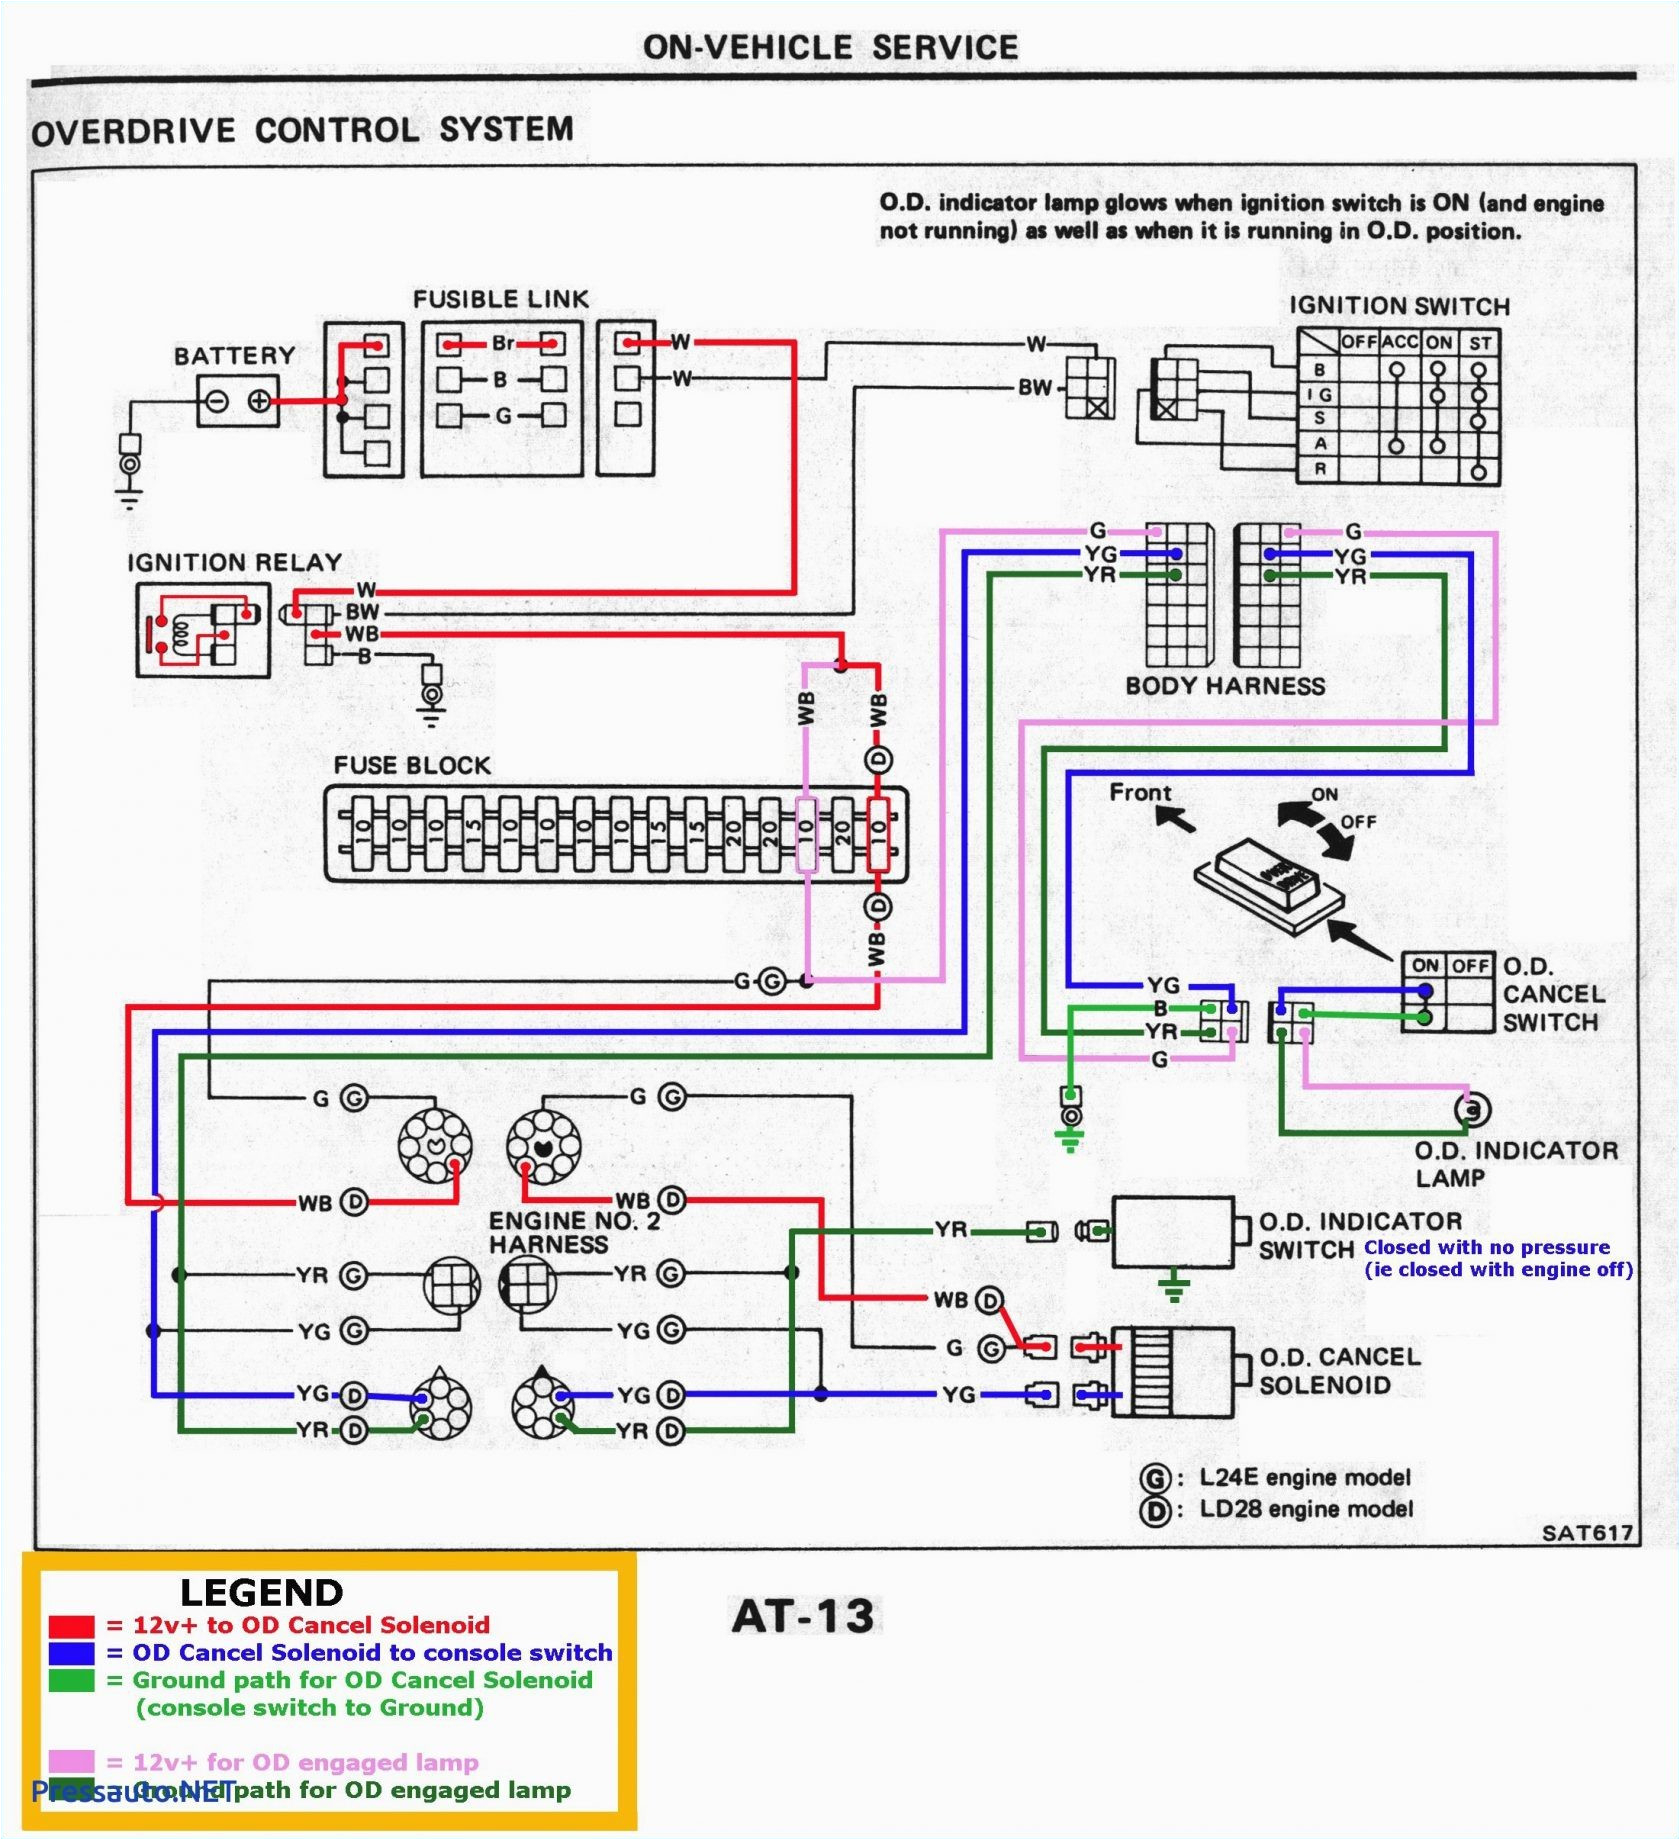 redline chevy 7 pin wiring harness wiring diagrams data redline chevy 7 pin wiring harness